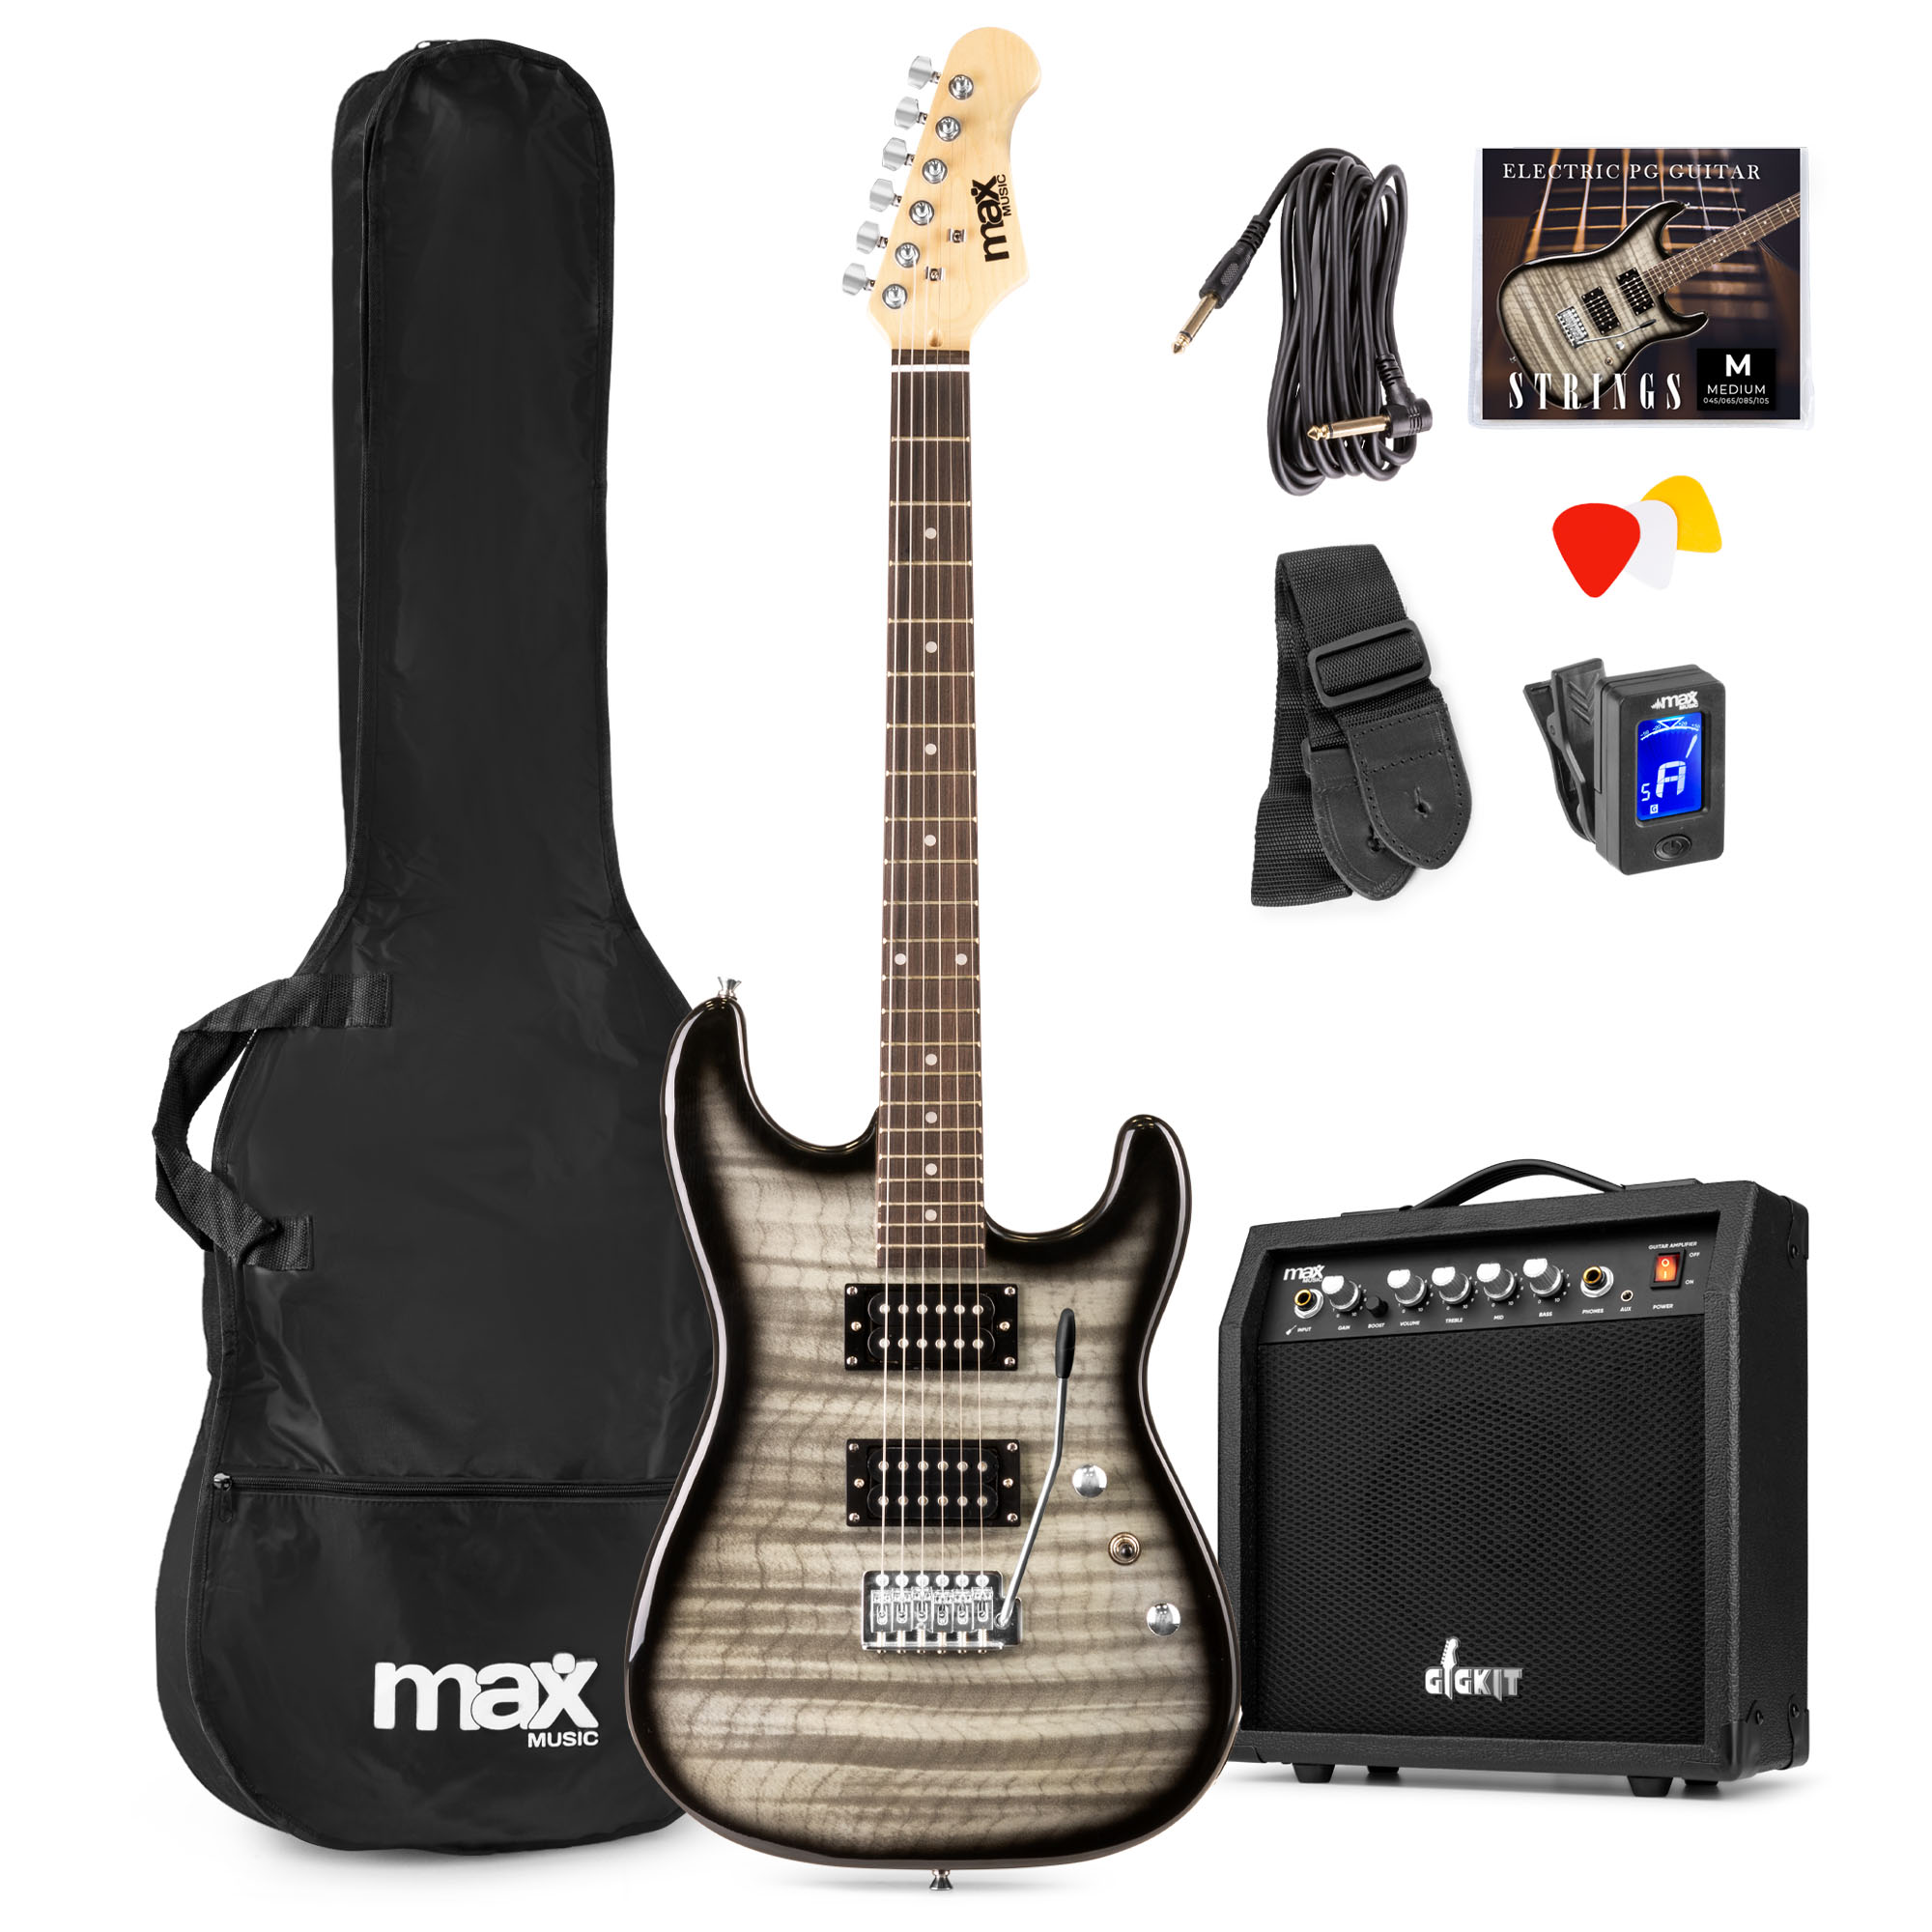 Max GigKit PG Elektrische gitaar met 40 Watt versterker en accessoires - Zwart